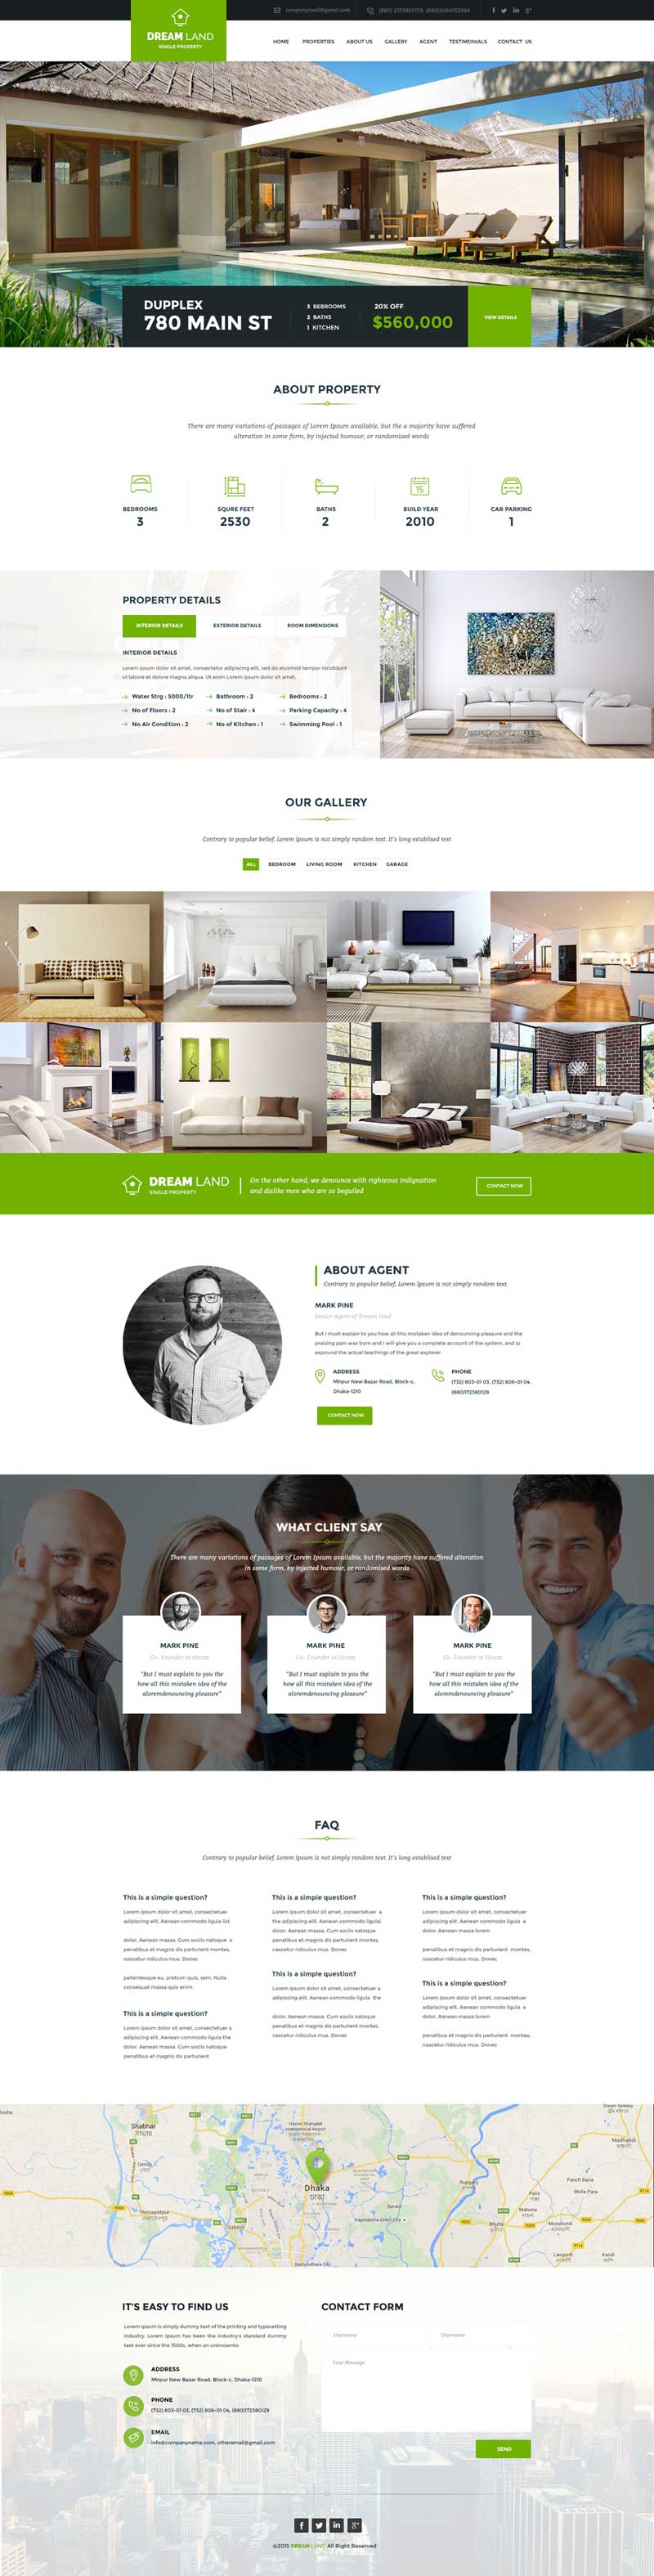 绿色的房产网二手房销售平台网站模板